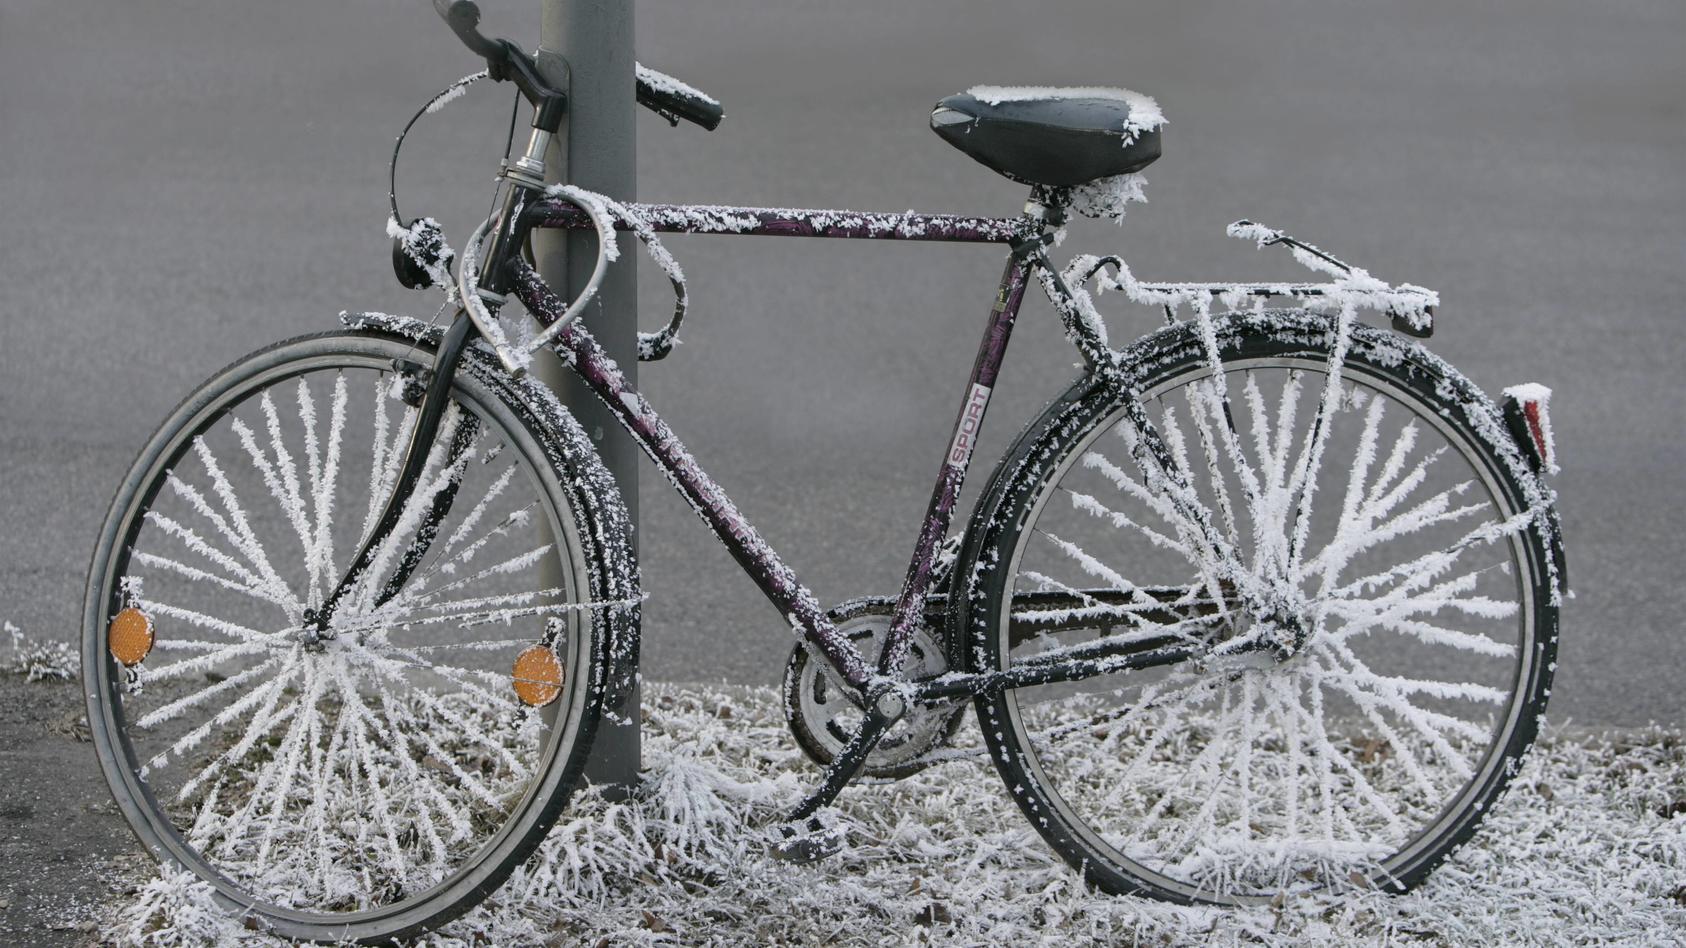 bei-temperaturen-unter-null-grad-kann-das-fahrradschloss-einfrieren